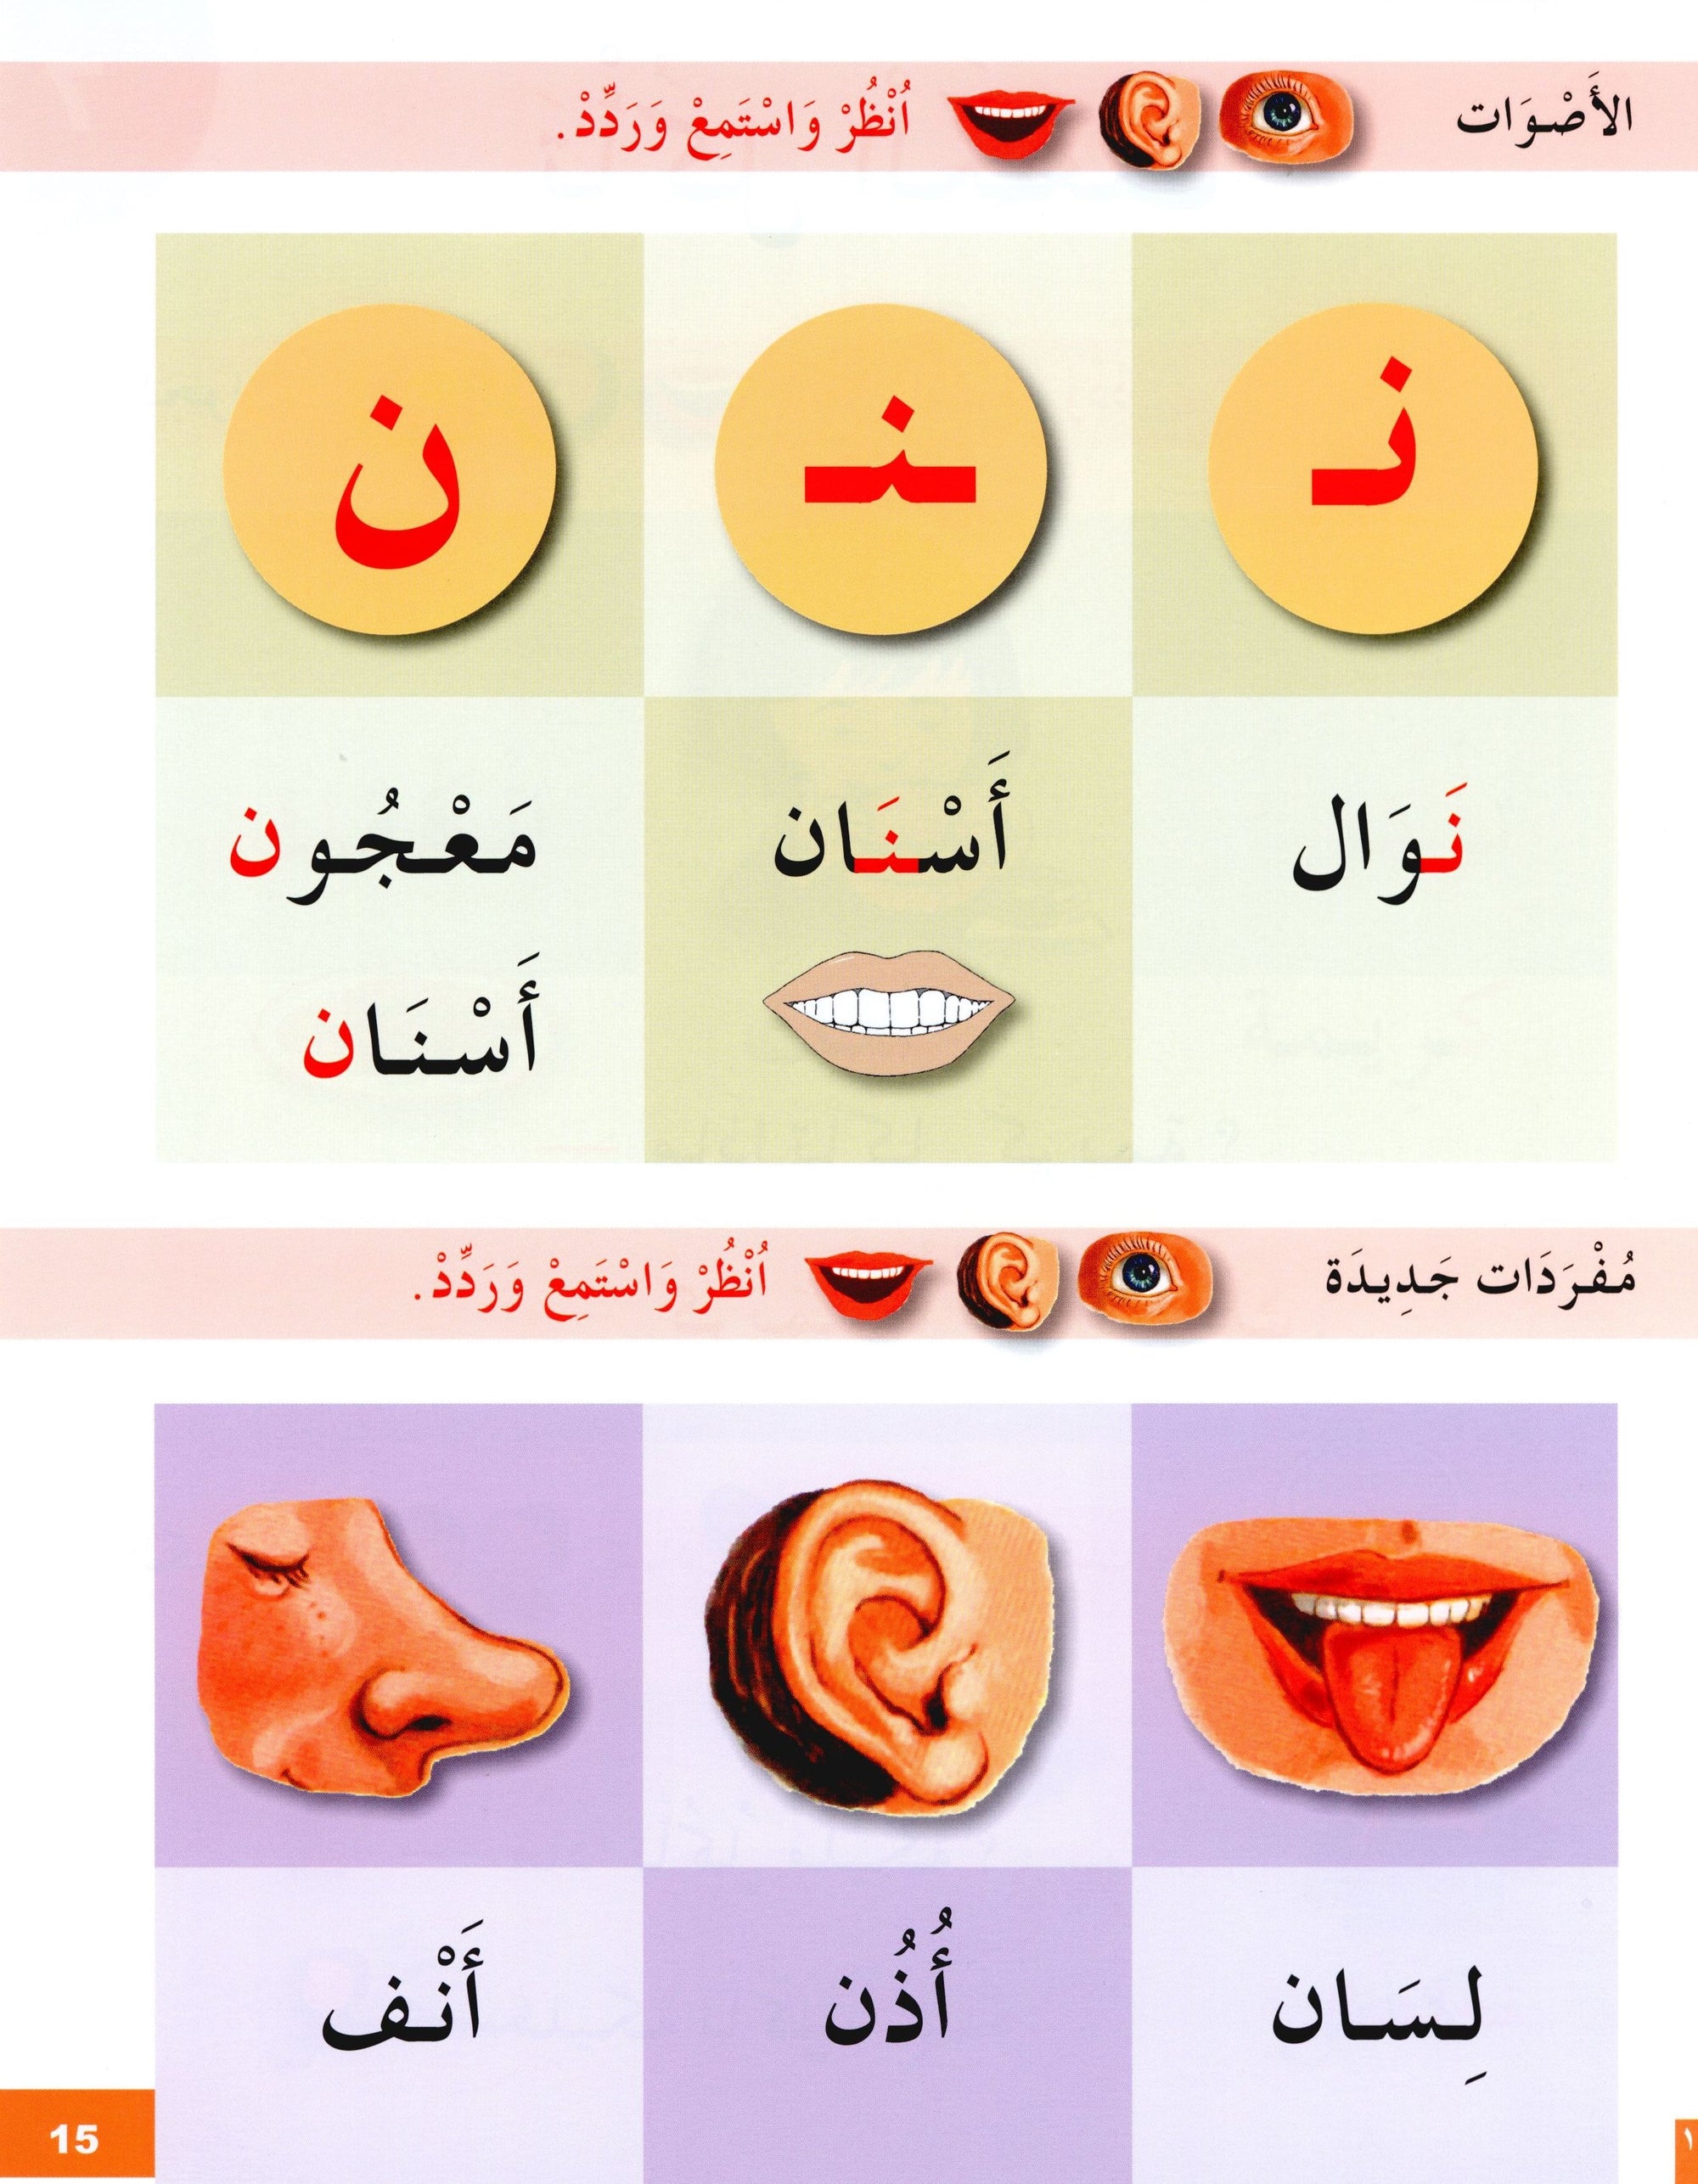 I Learn Arabic Simplified Curriculum Textbook Level 1 أتعلم العربية المنهج الميسر كتاب التلميذ